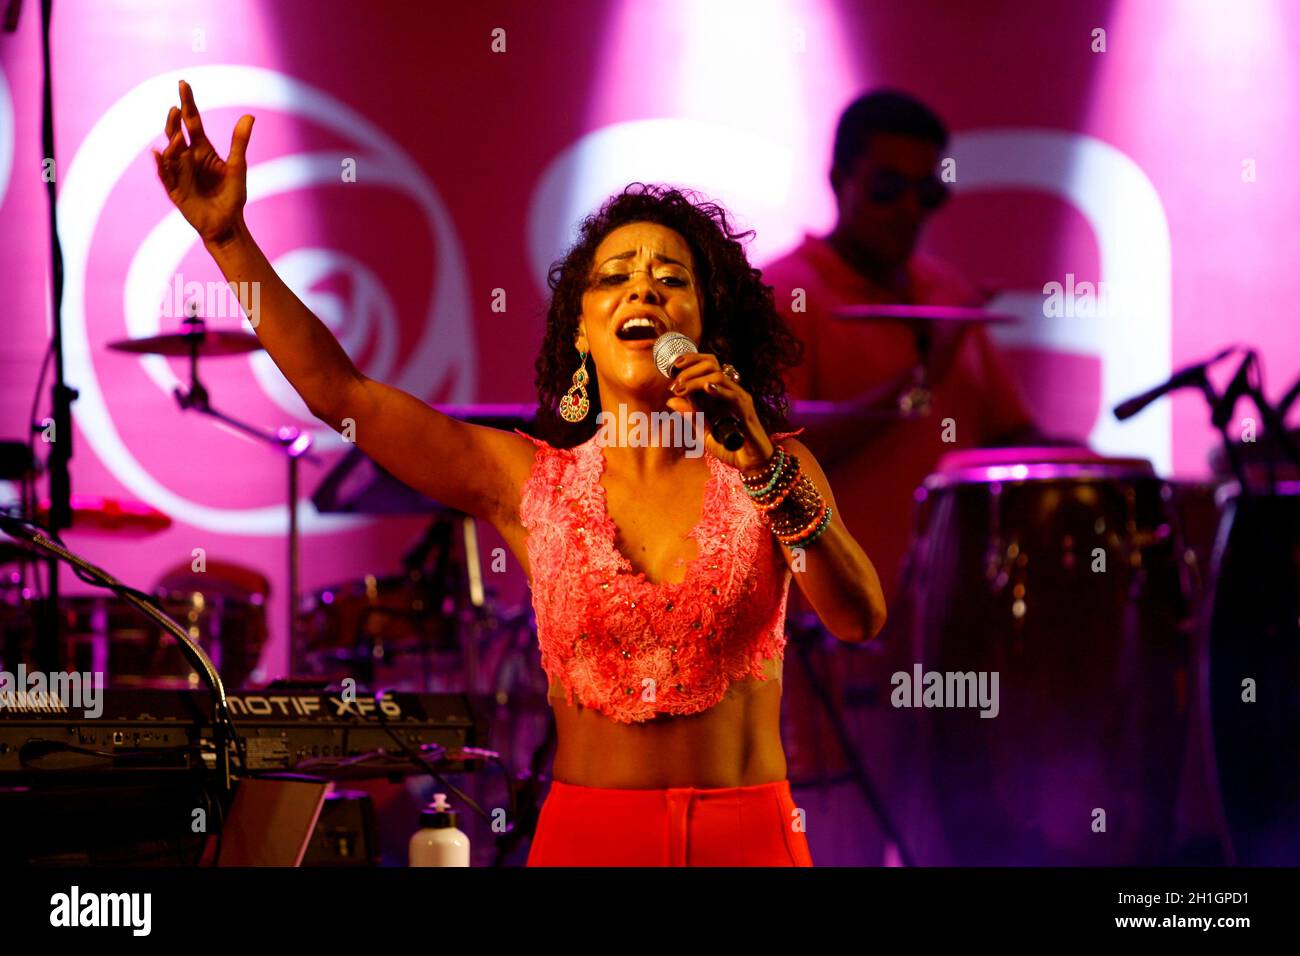 salvador, bahia / brasile - 1 ottobre 2014: La cantante Ana Mametto è visto durante una performance al Parque Costa Azul nella città di Salvador. Foto Stock